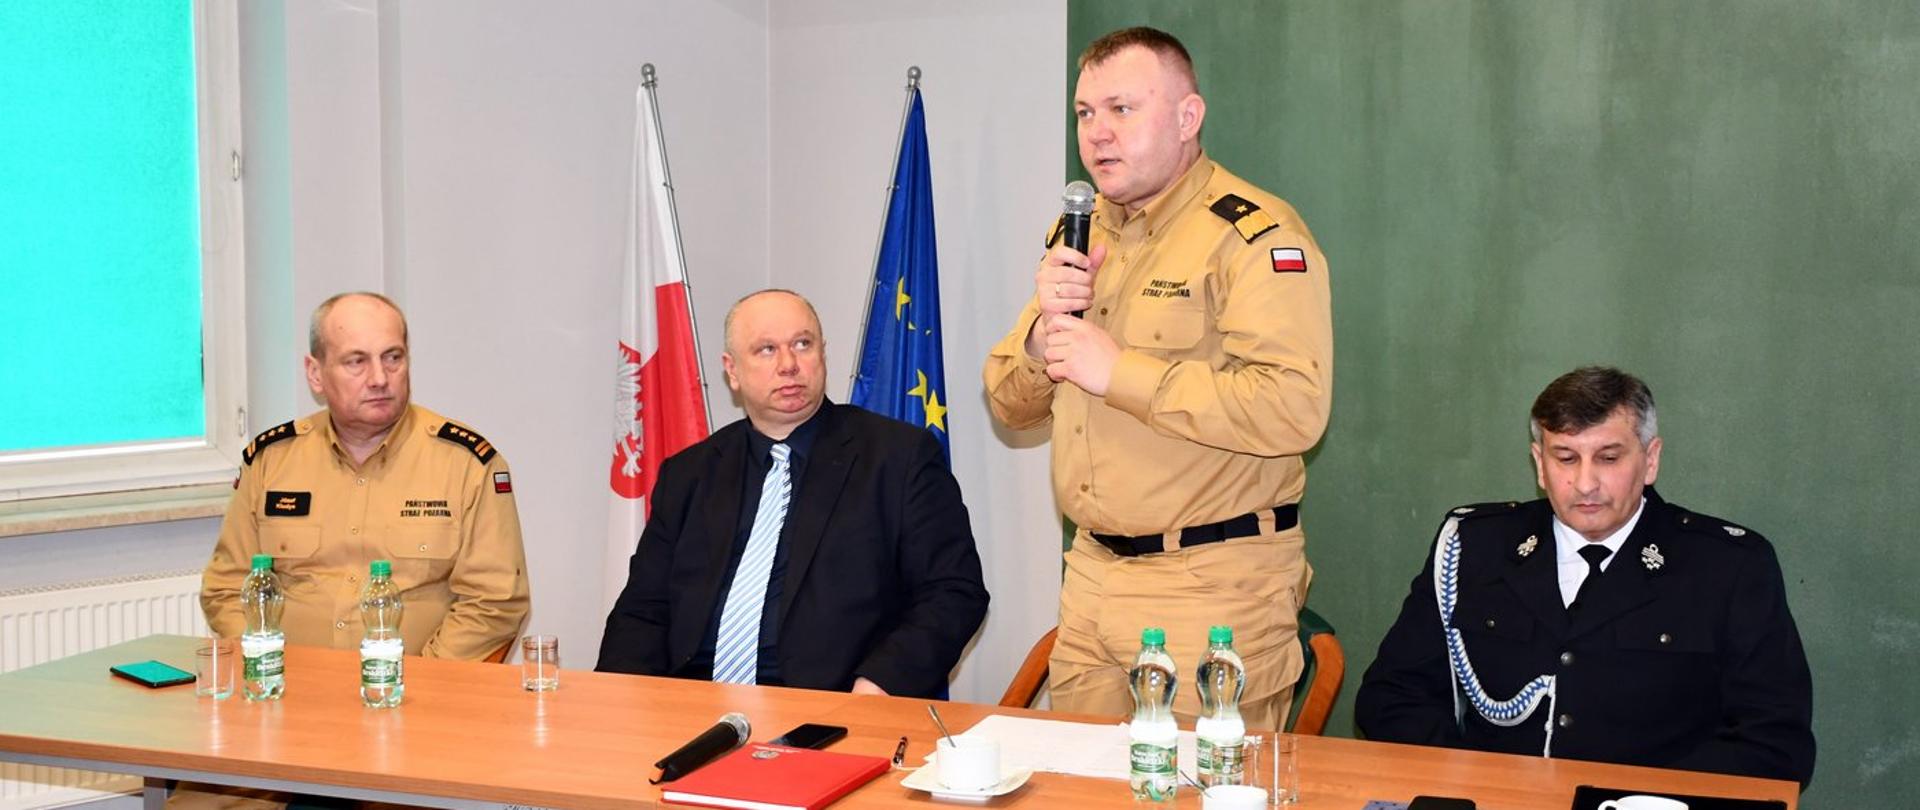 Na zdjęciu widzimy przemawiającego Podkarpackiego Komendanta Wojewódzkiego PSP